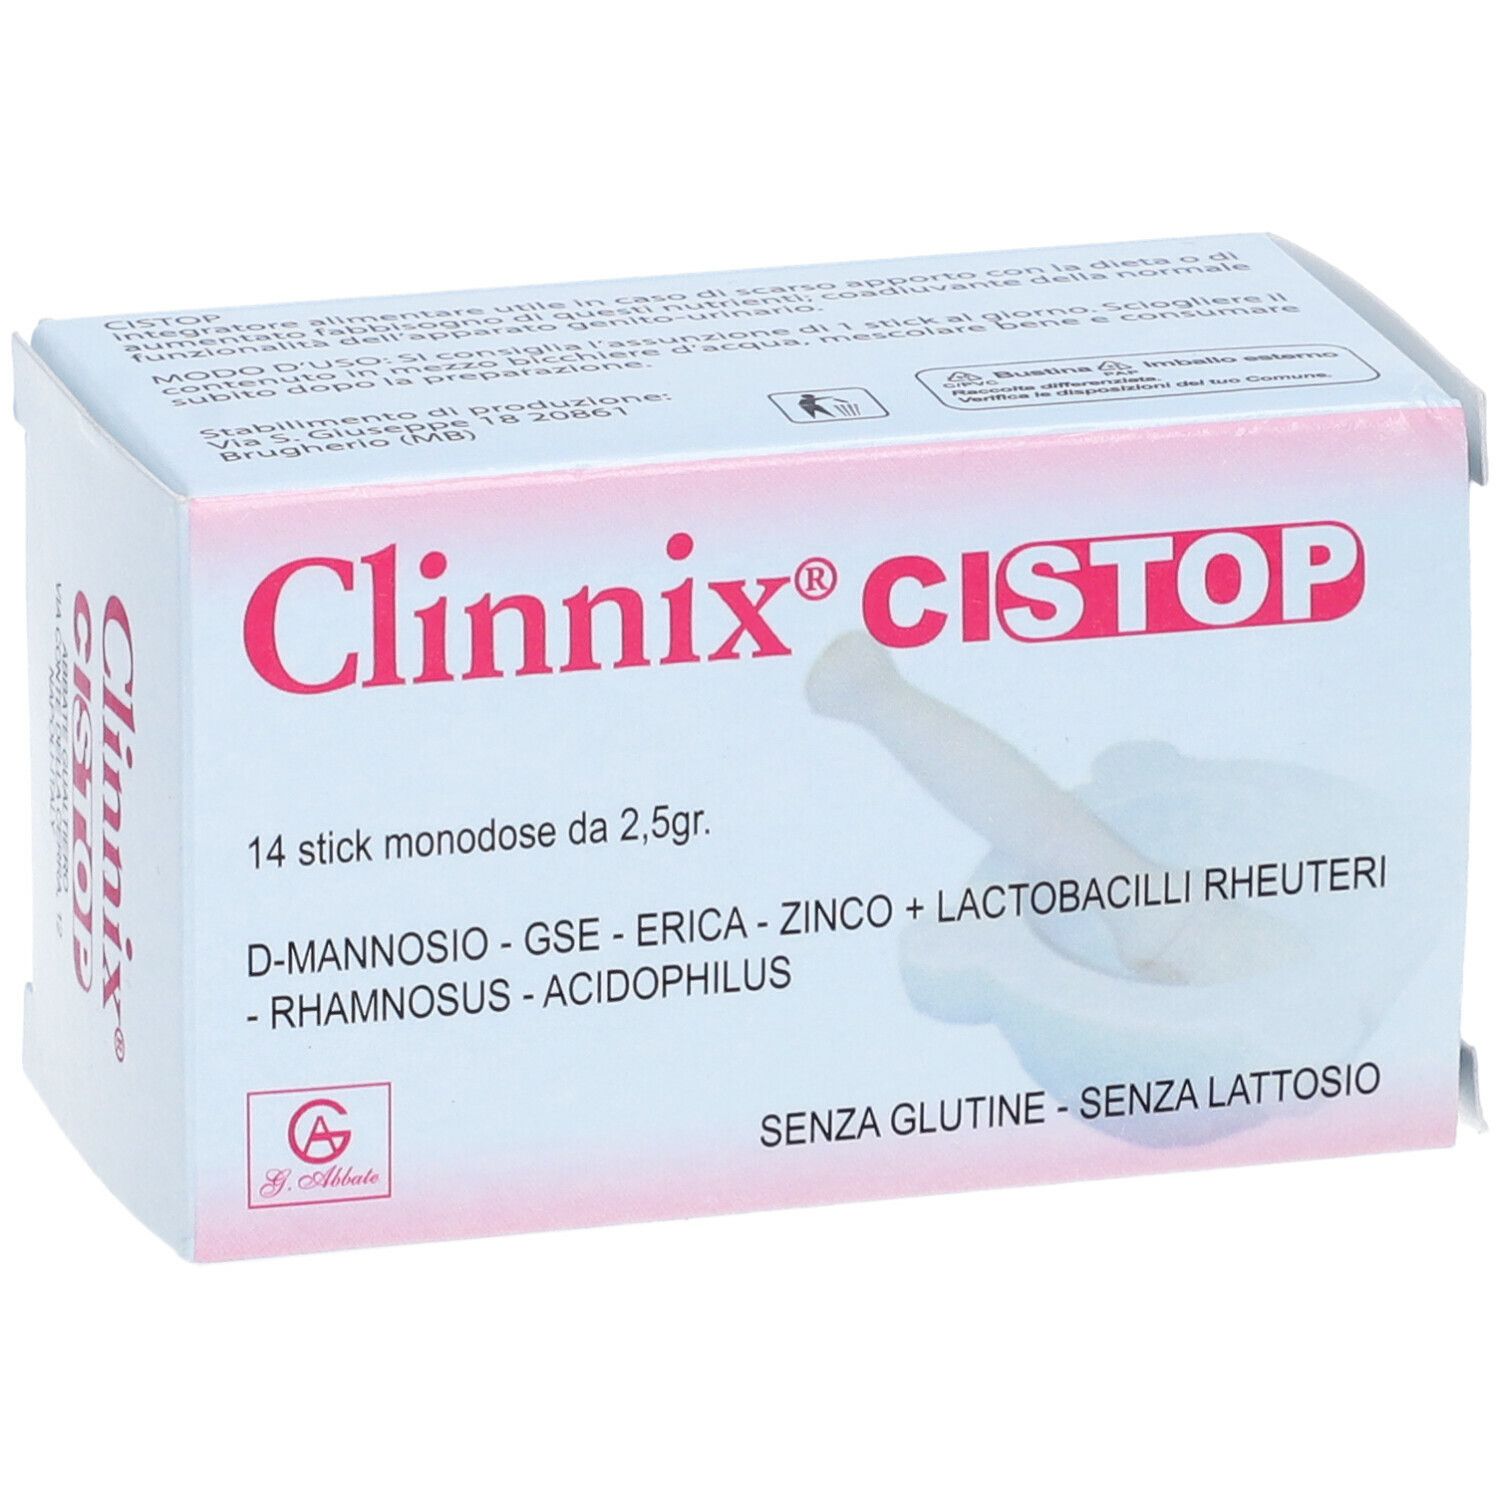 Clinnix Cistop Monodose